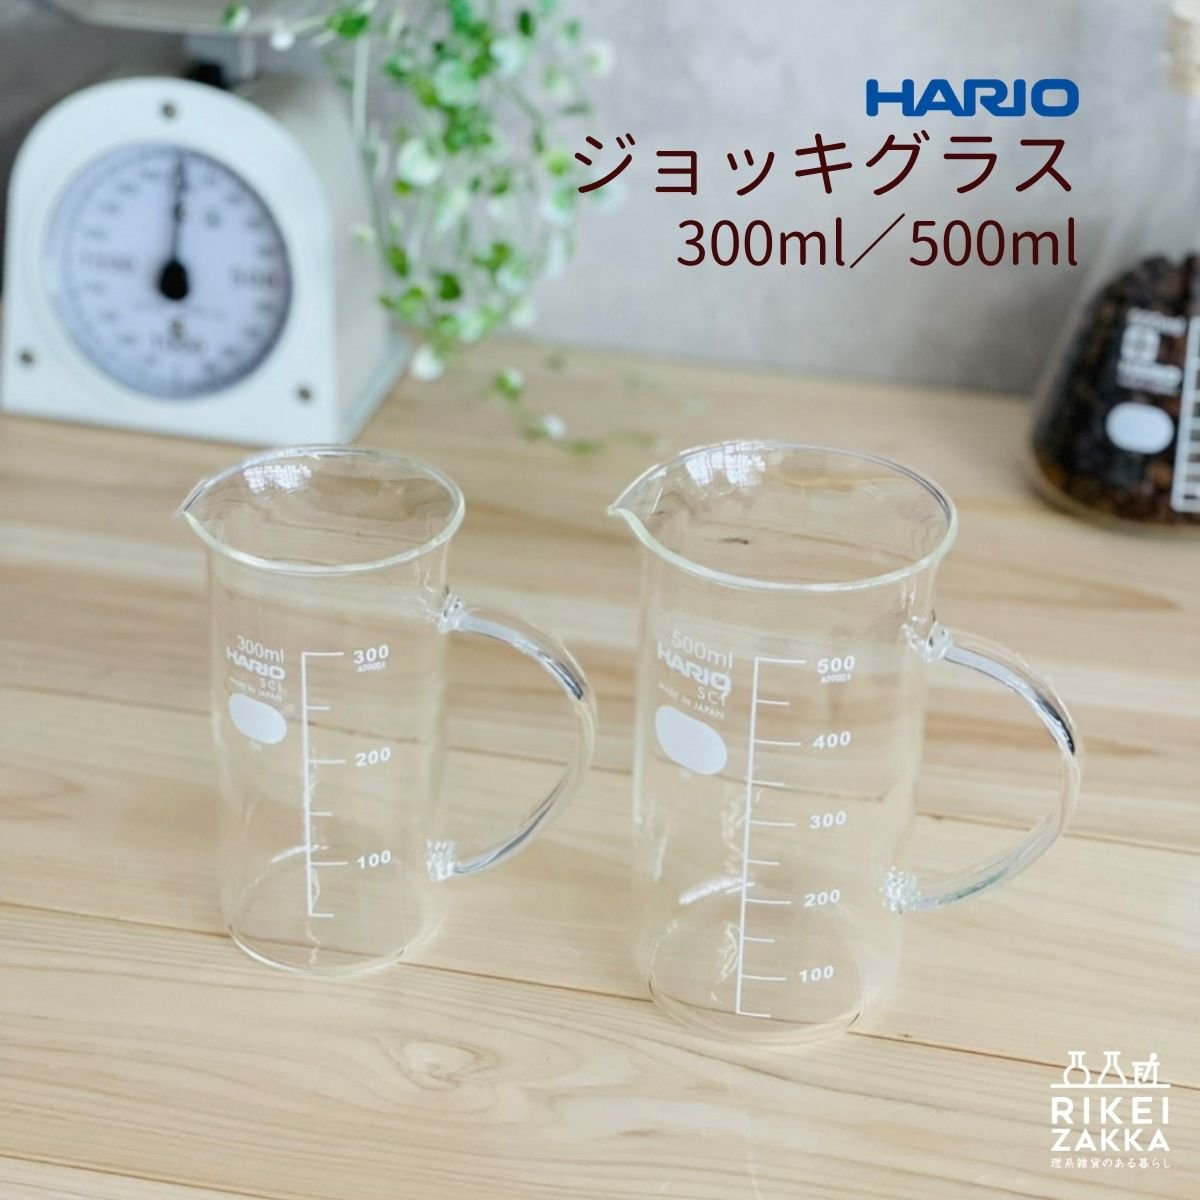 送料込】 HARIO ハリオ ビーカー 500ml コーヒー インテリア880円 sarozambia.com